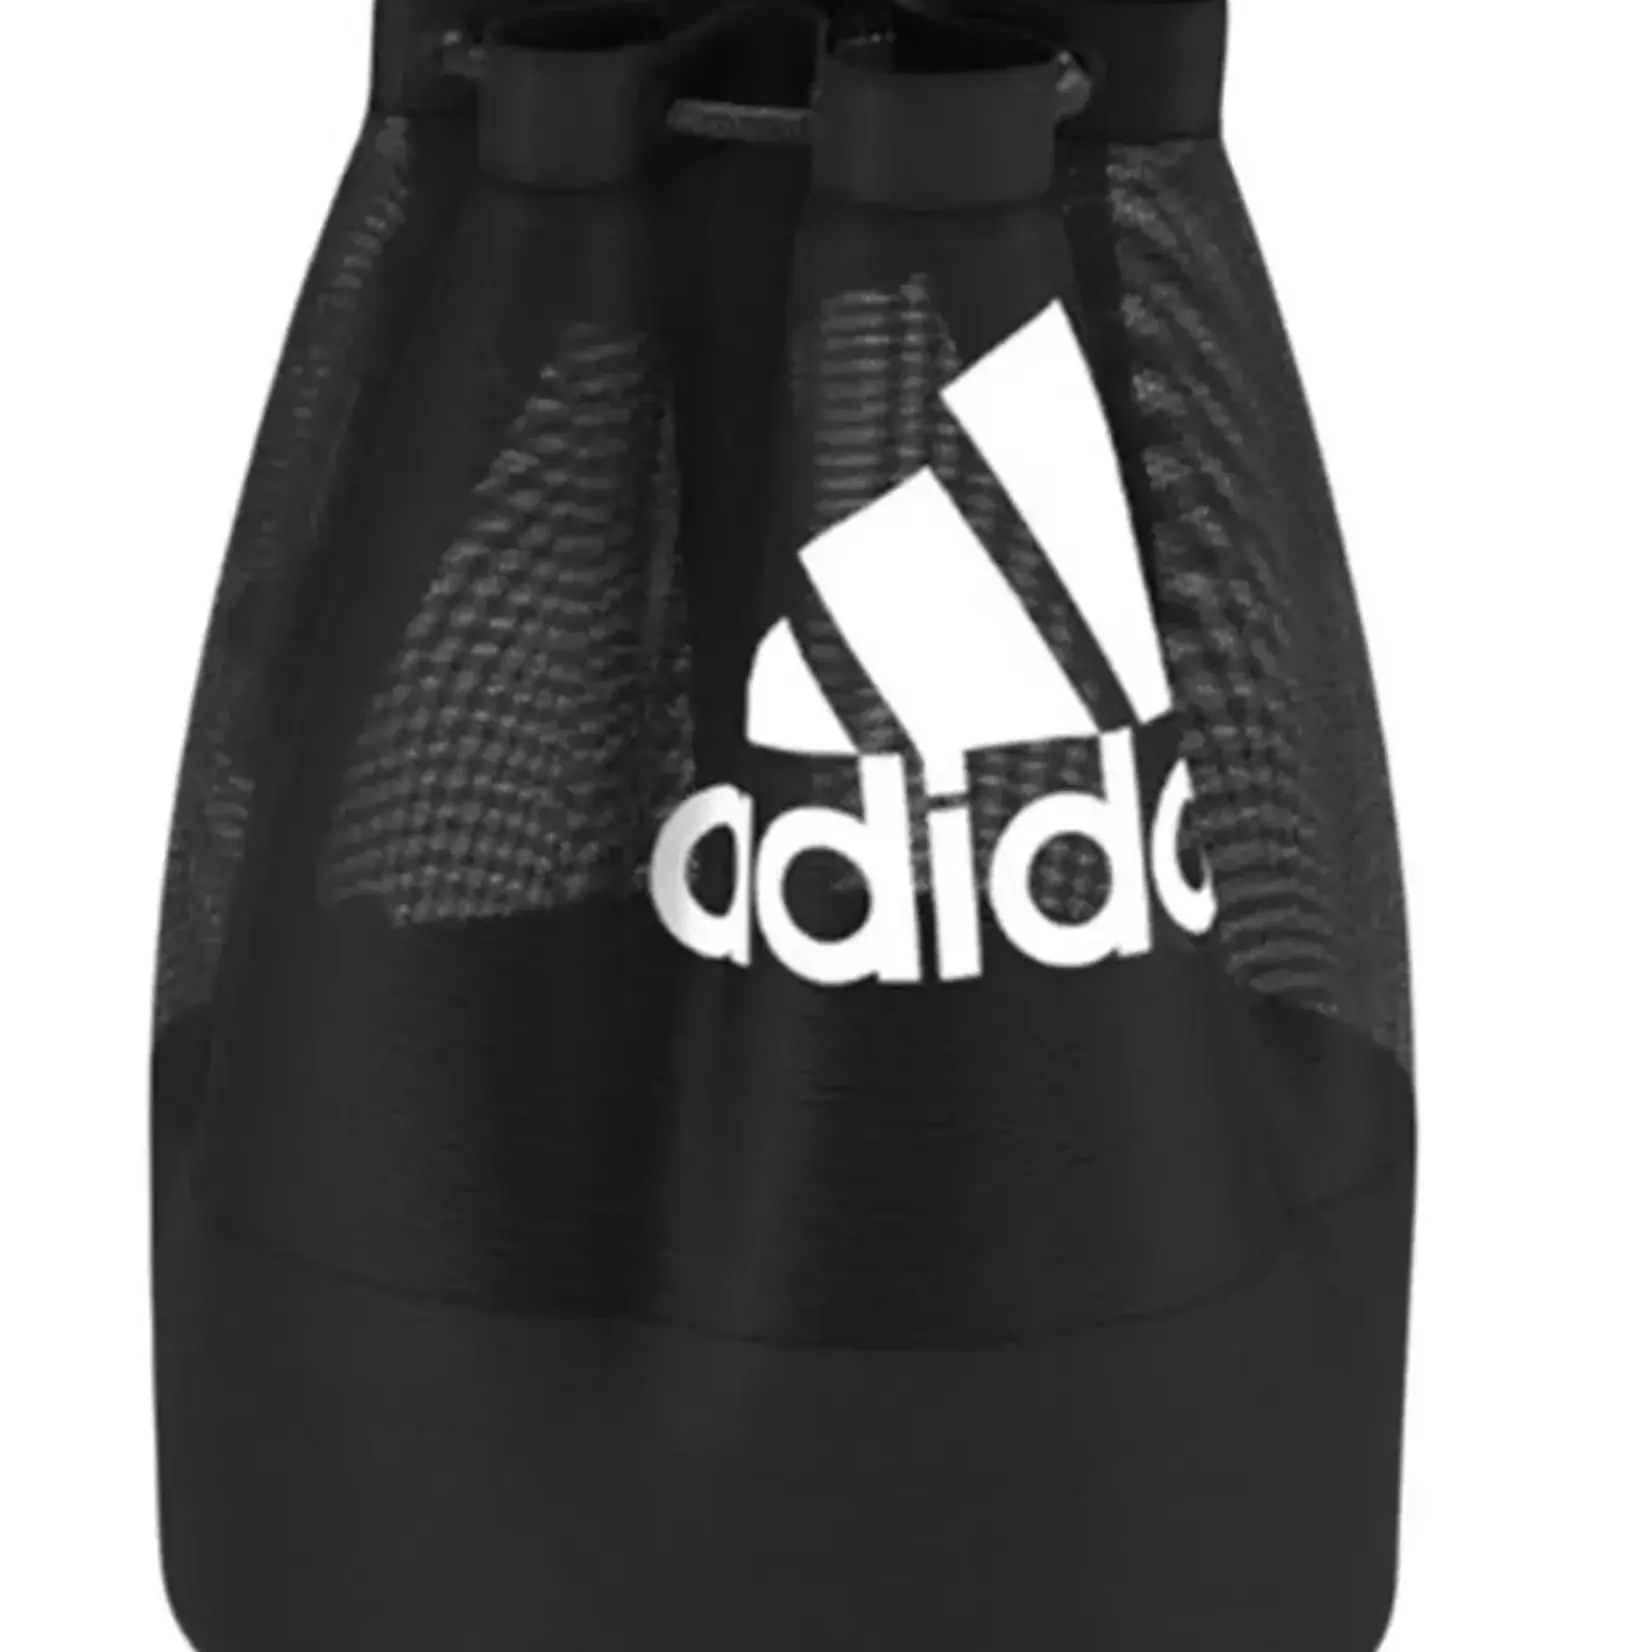 Adidas Adidas Soccer Ball Bag, Mesh